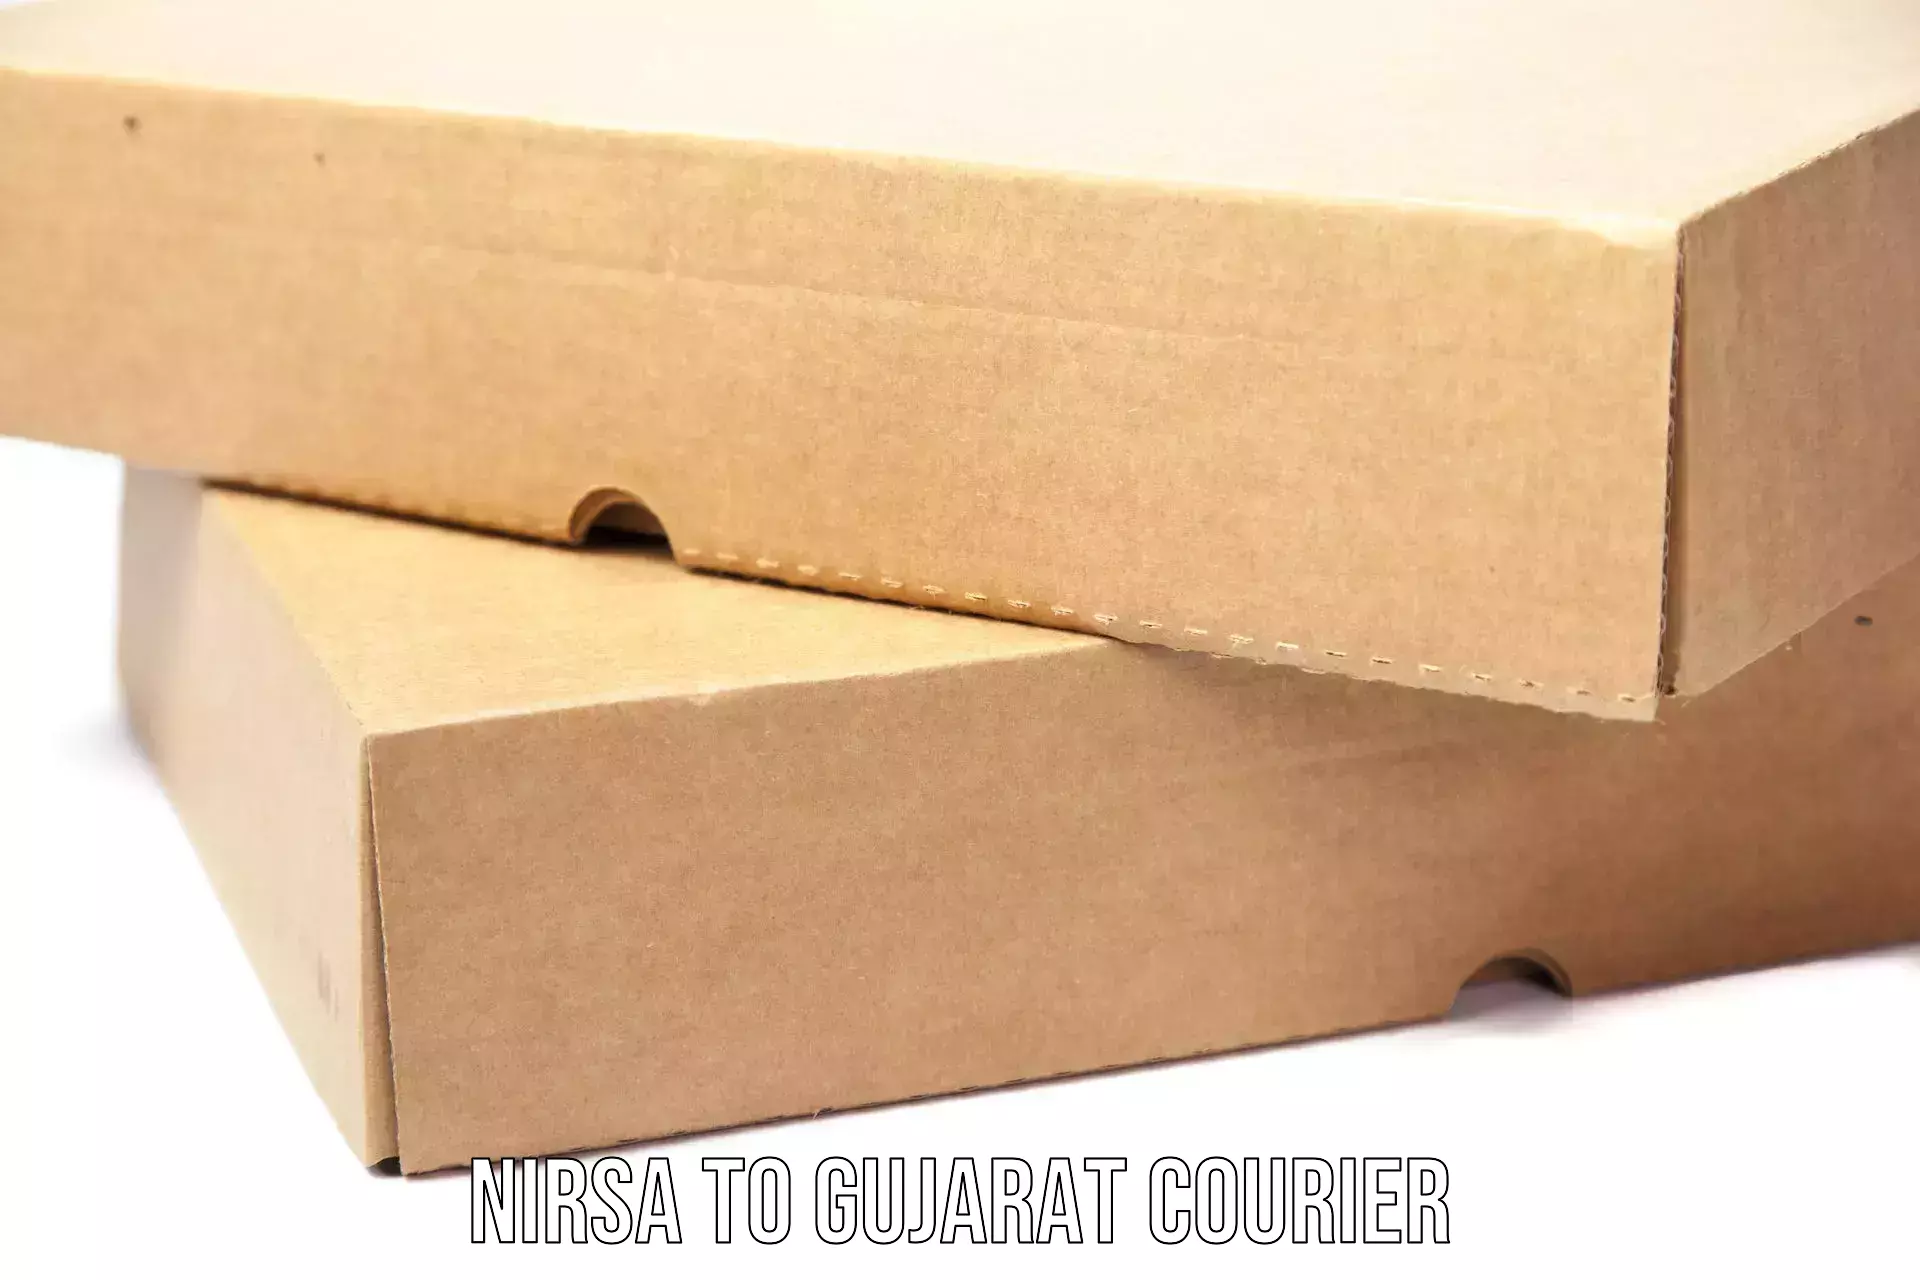 Urgent courier needs Nirsa to Gujarat